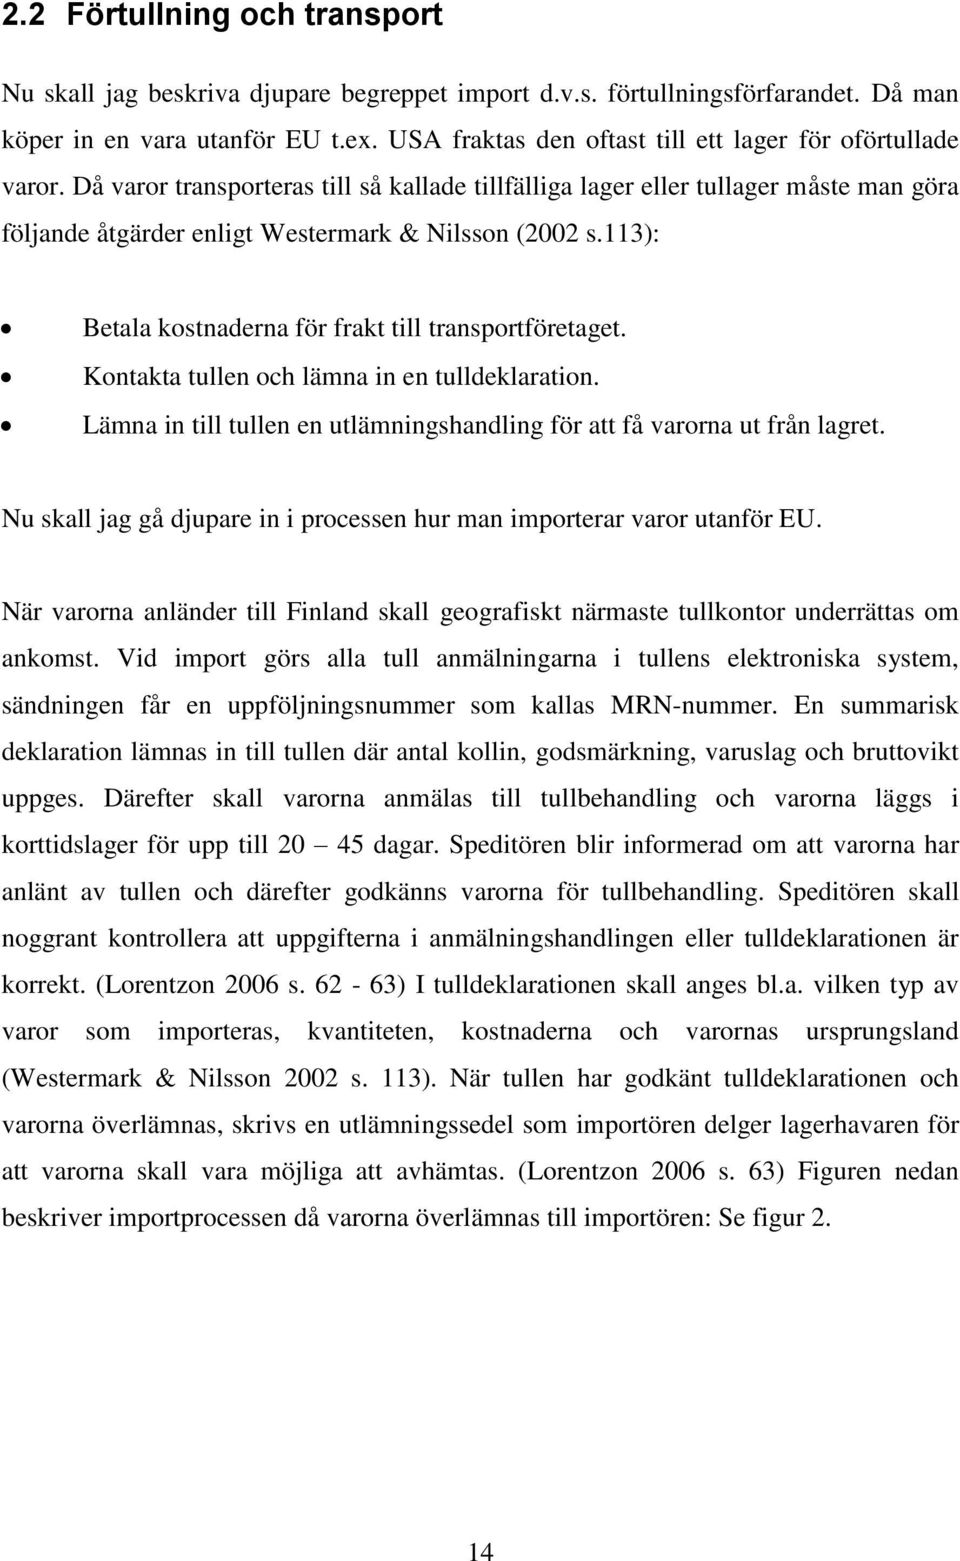 Då varor transporteras till så kallade tillfälliga lager eller tullager måste man göra följande åtgärder enligt Westermark & Nilsson (2002 s.113): Betala kostnaderna för frakt till transportföretaget.